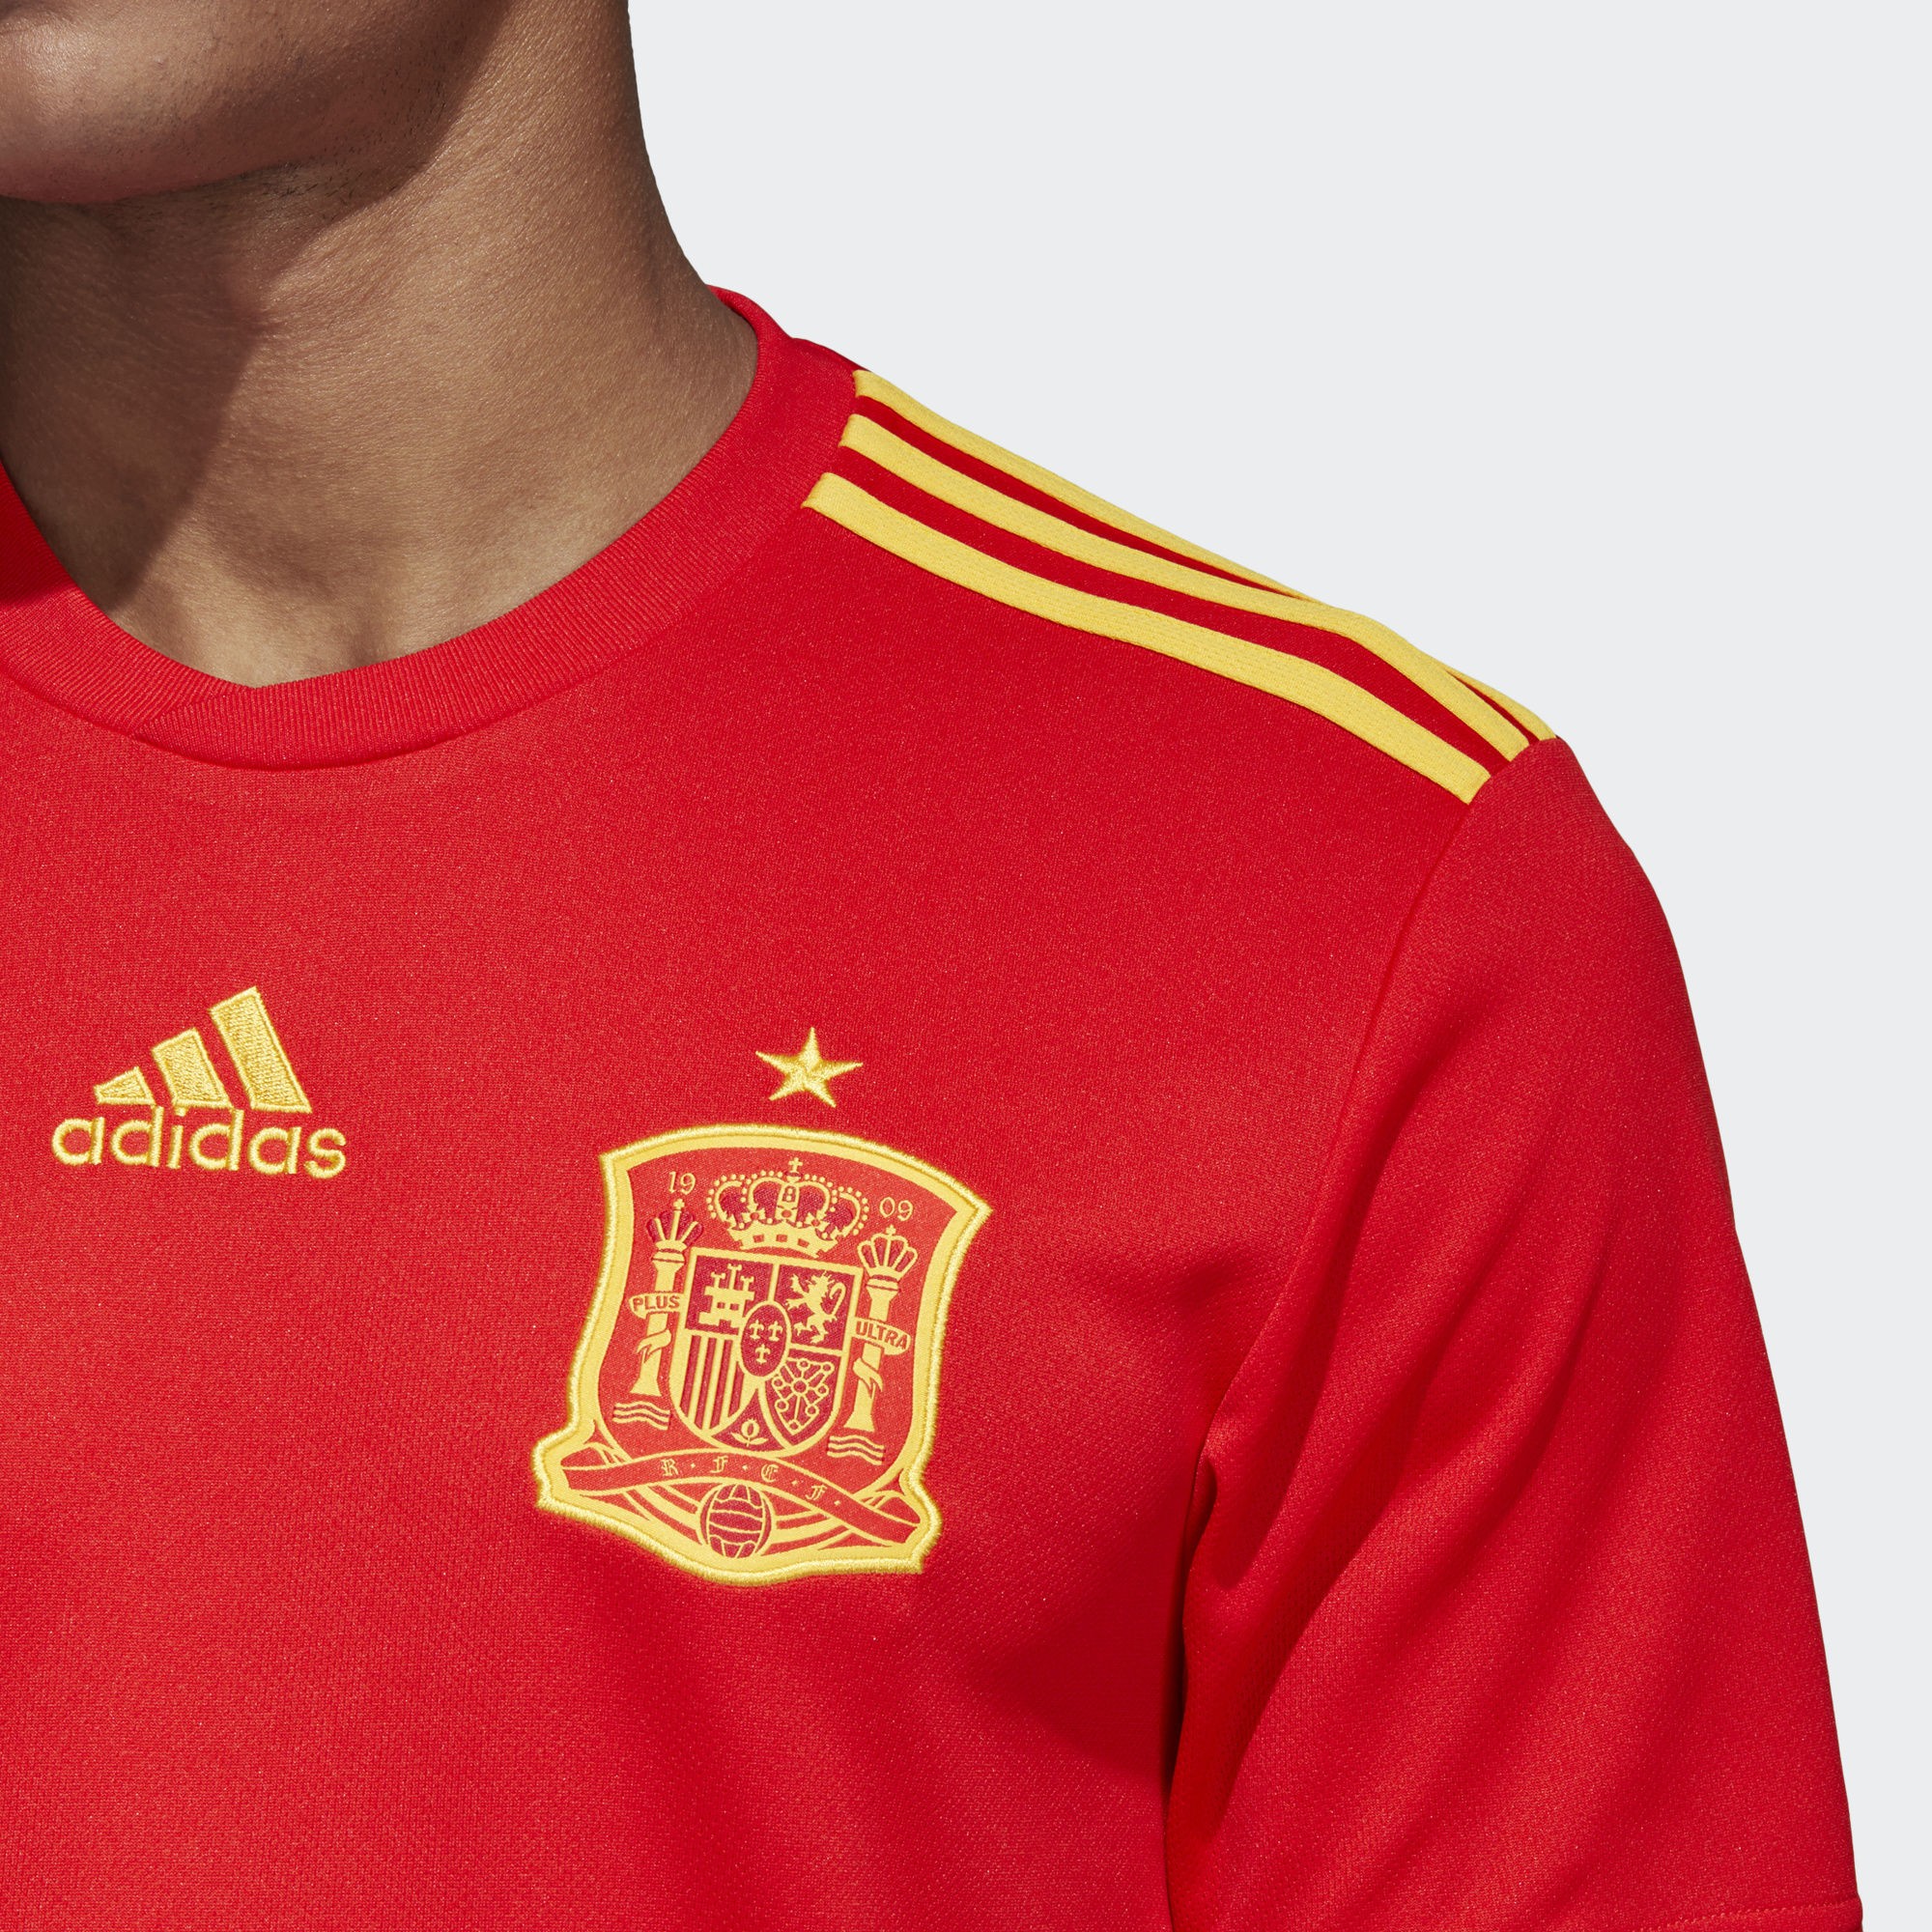 三钻荣光!西班牙国家队2018世界杯球衣发布!